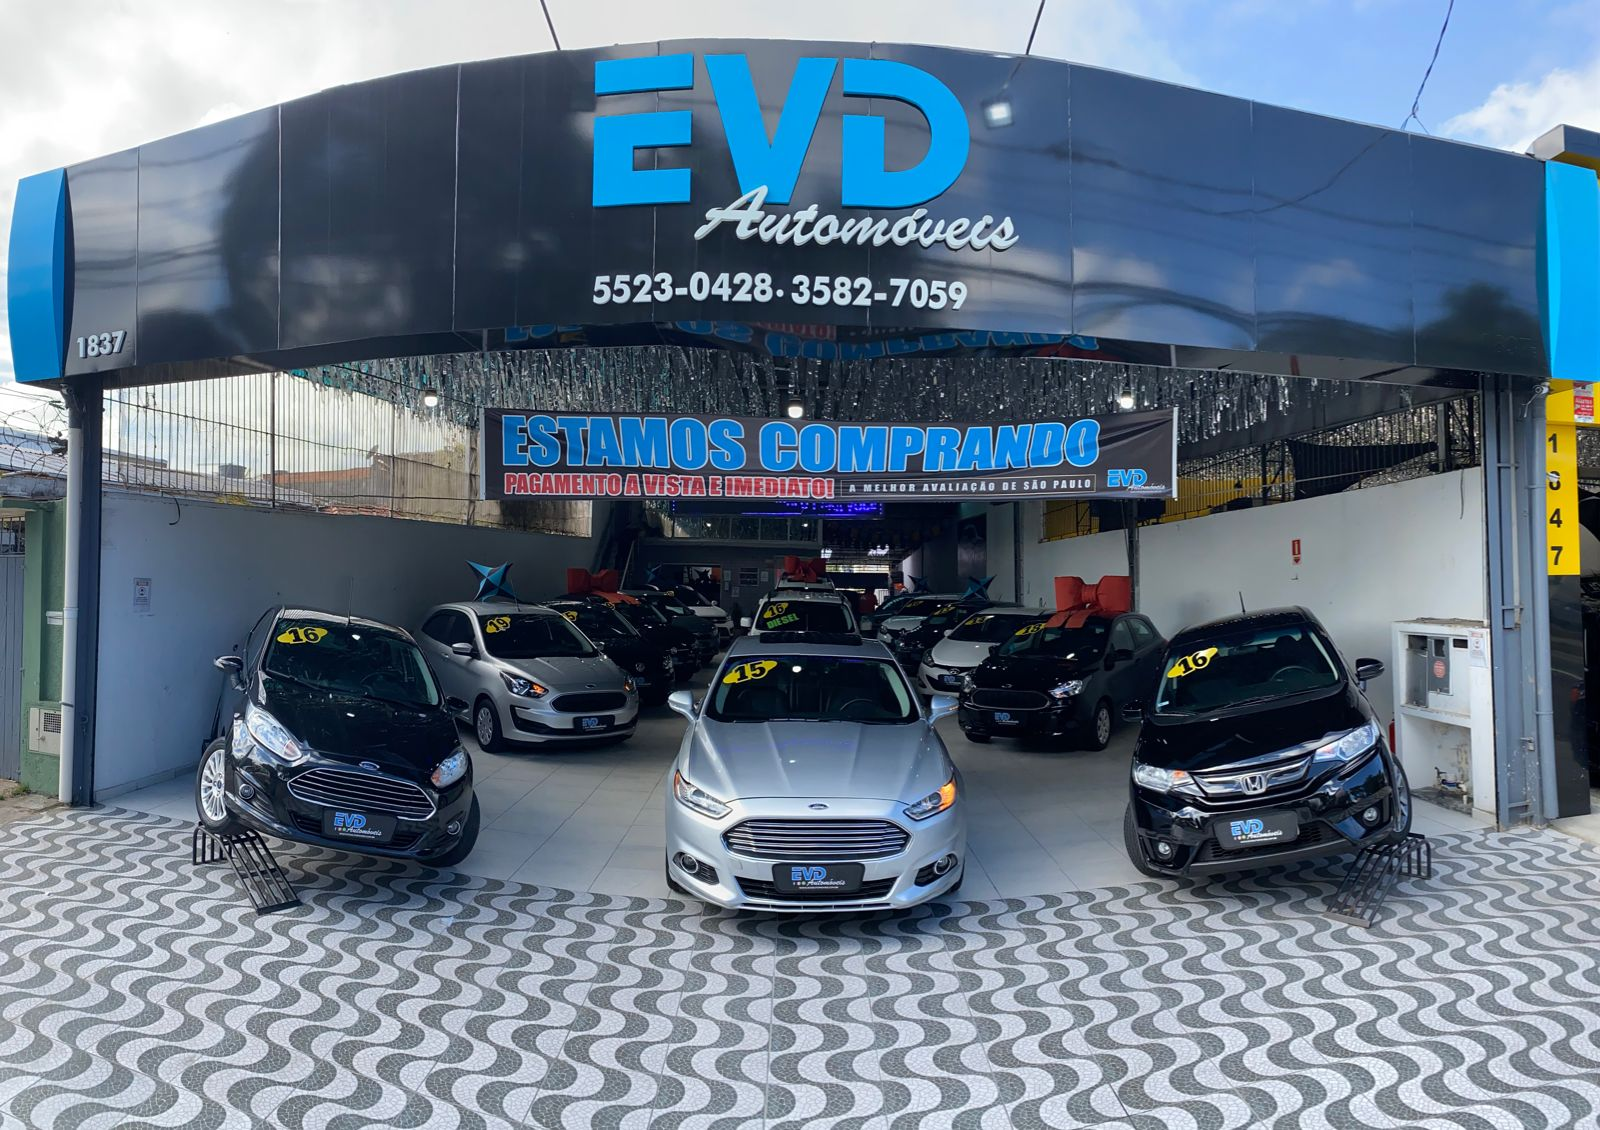 Fachada da loja Veículos à venda em Evd Automóveis - São Paulo - SP